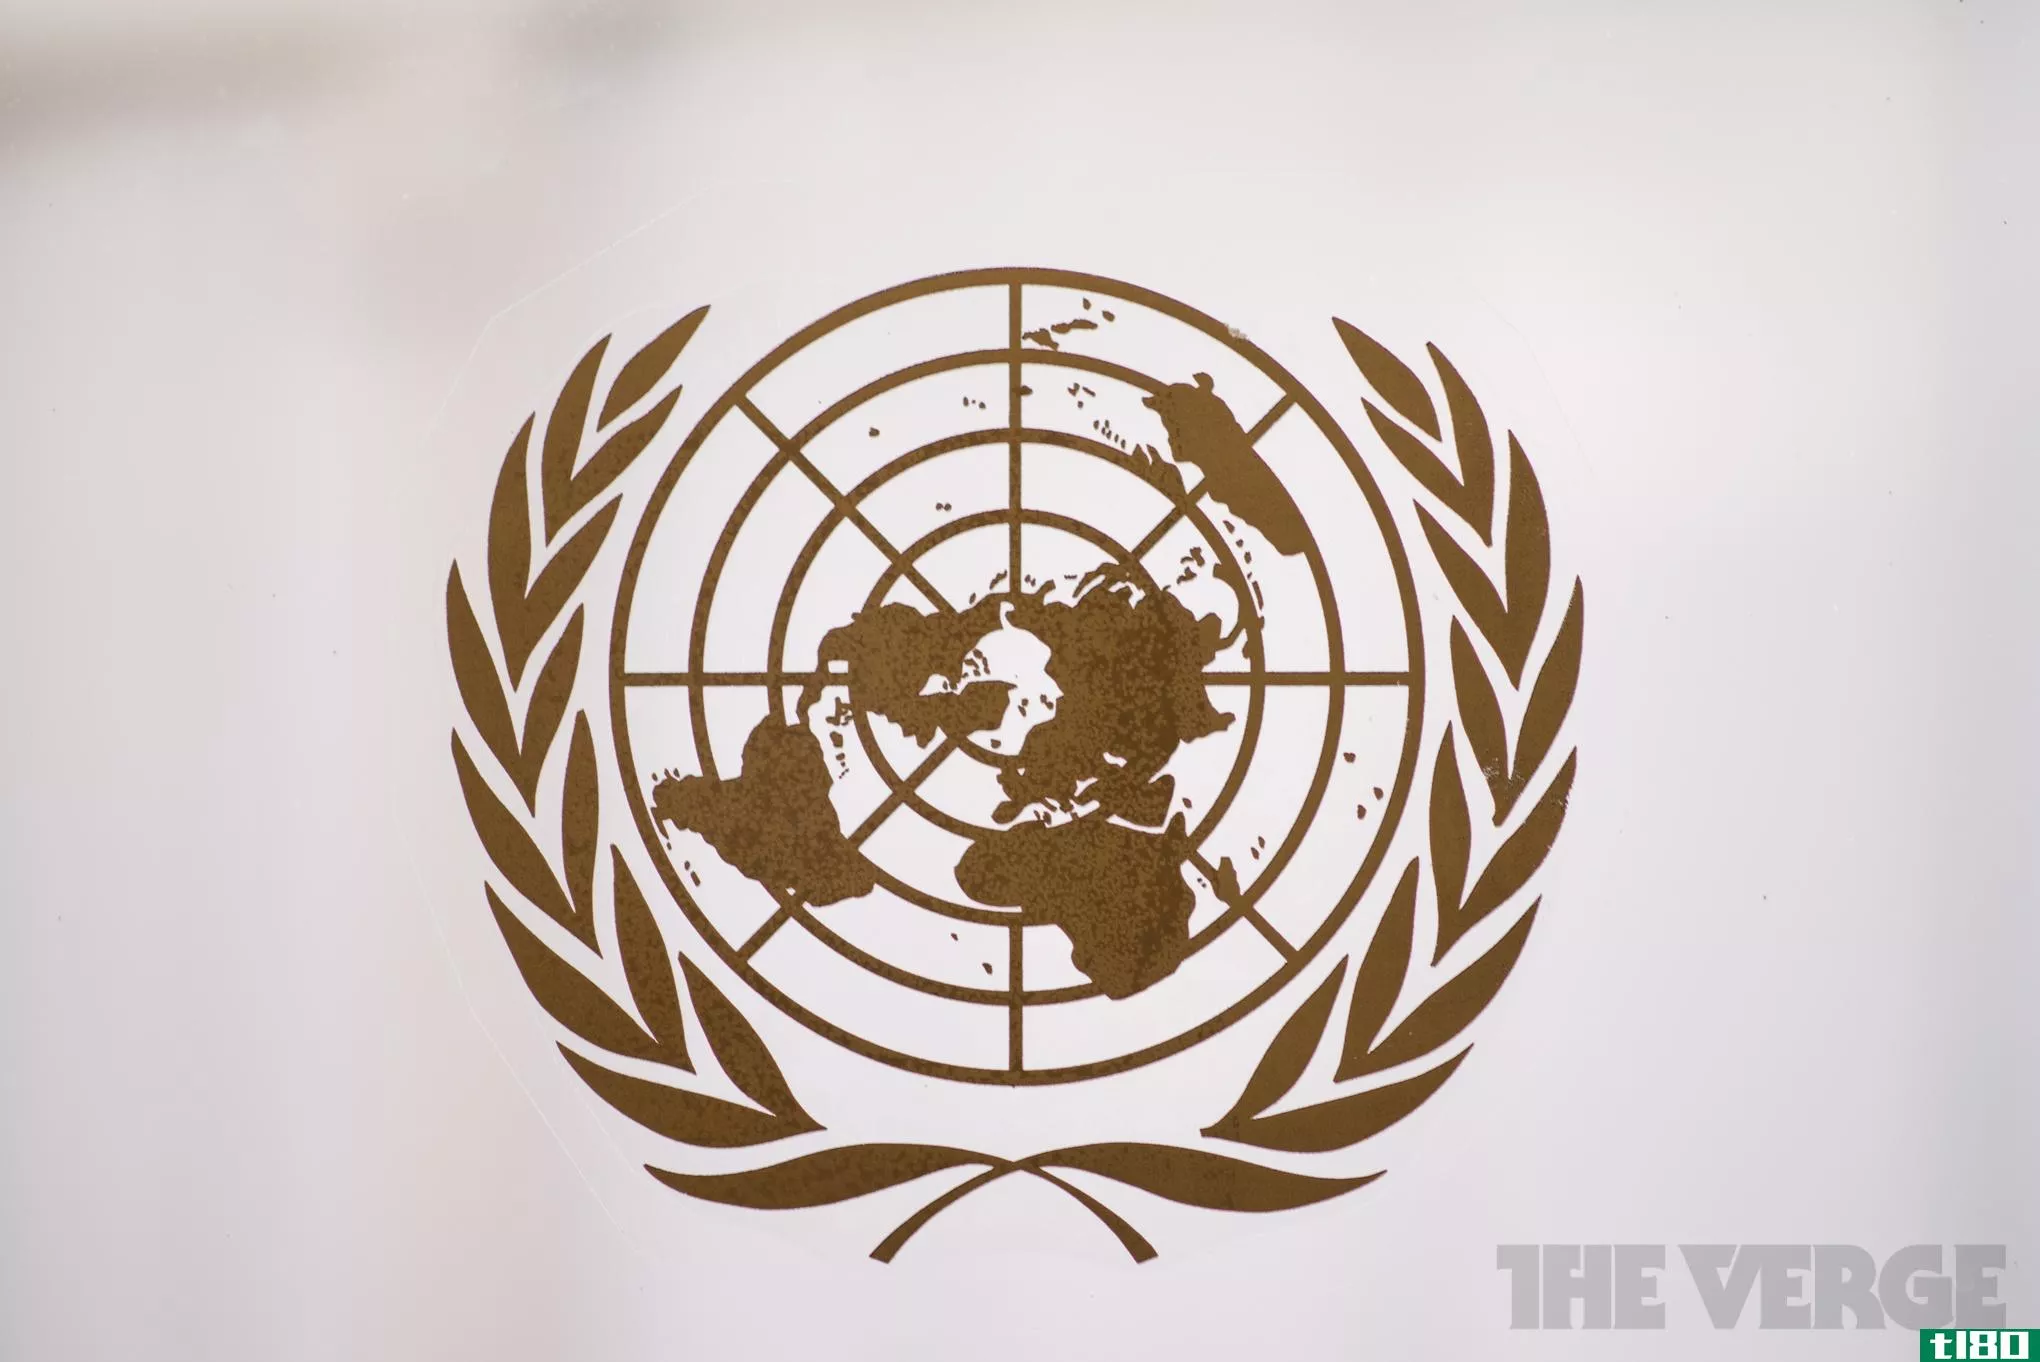 联合国人权报告批评美国的监视、无人机使用和酷刑